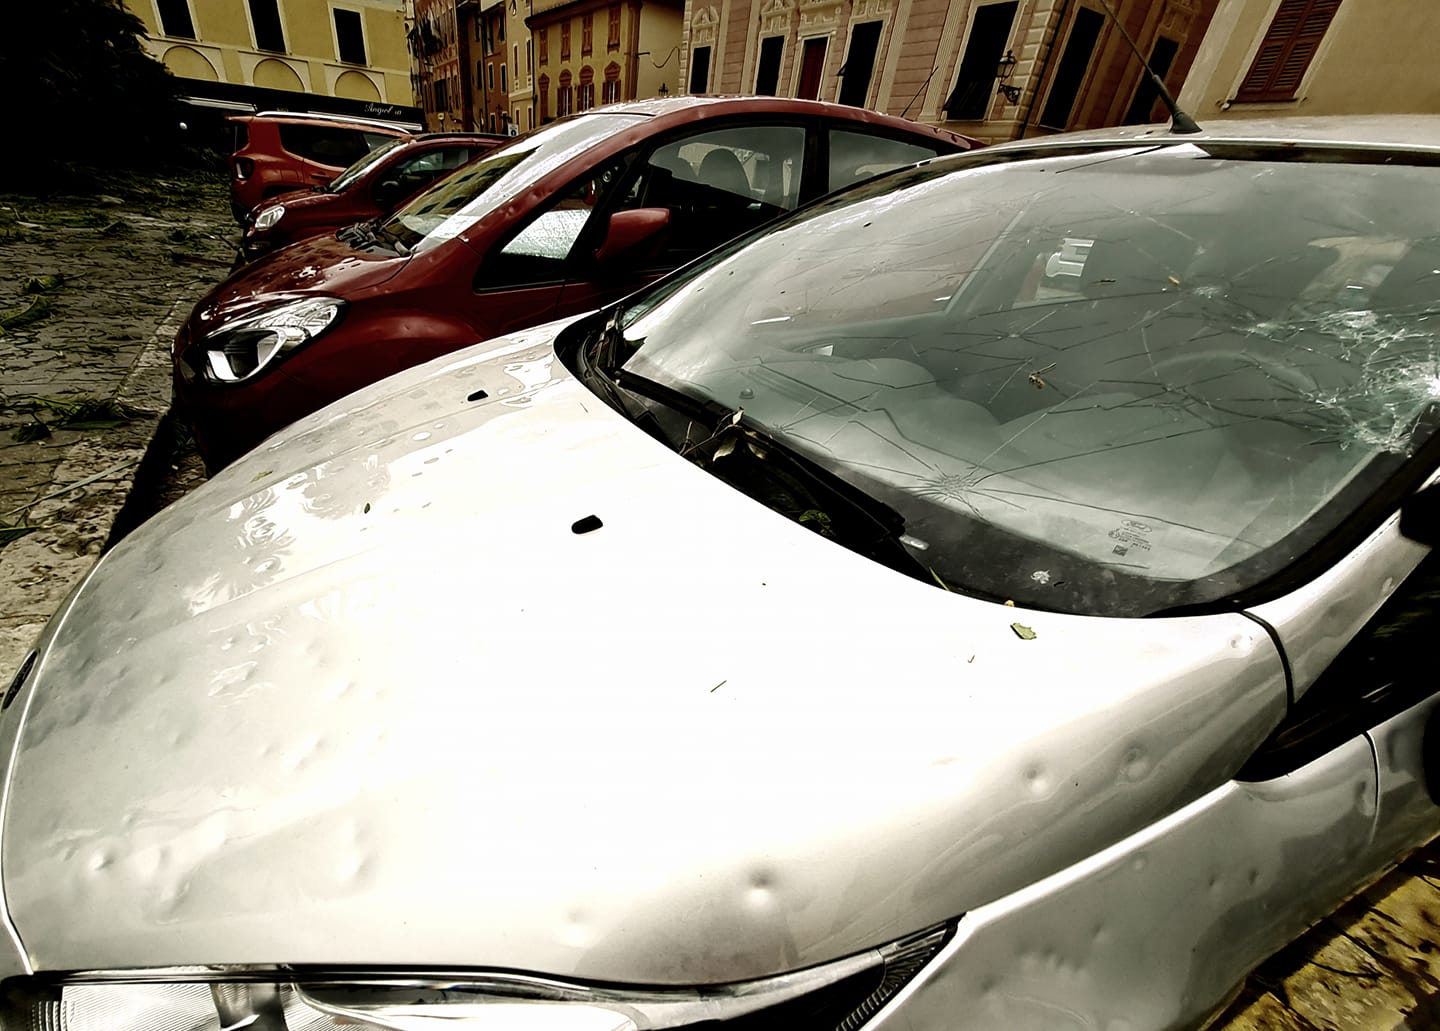 Maltempo in Liguria, oltre mille auto con problemi di carrozzeria: presi d'assalto i centri di sostituzione vetri